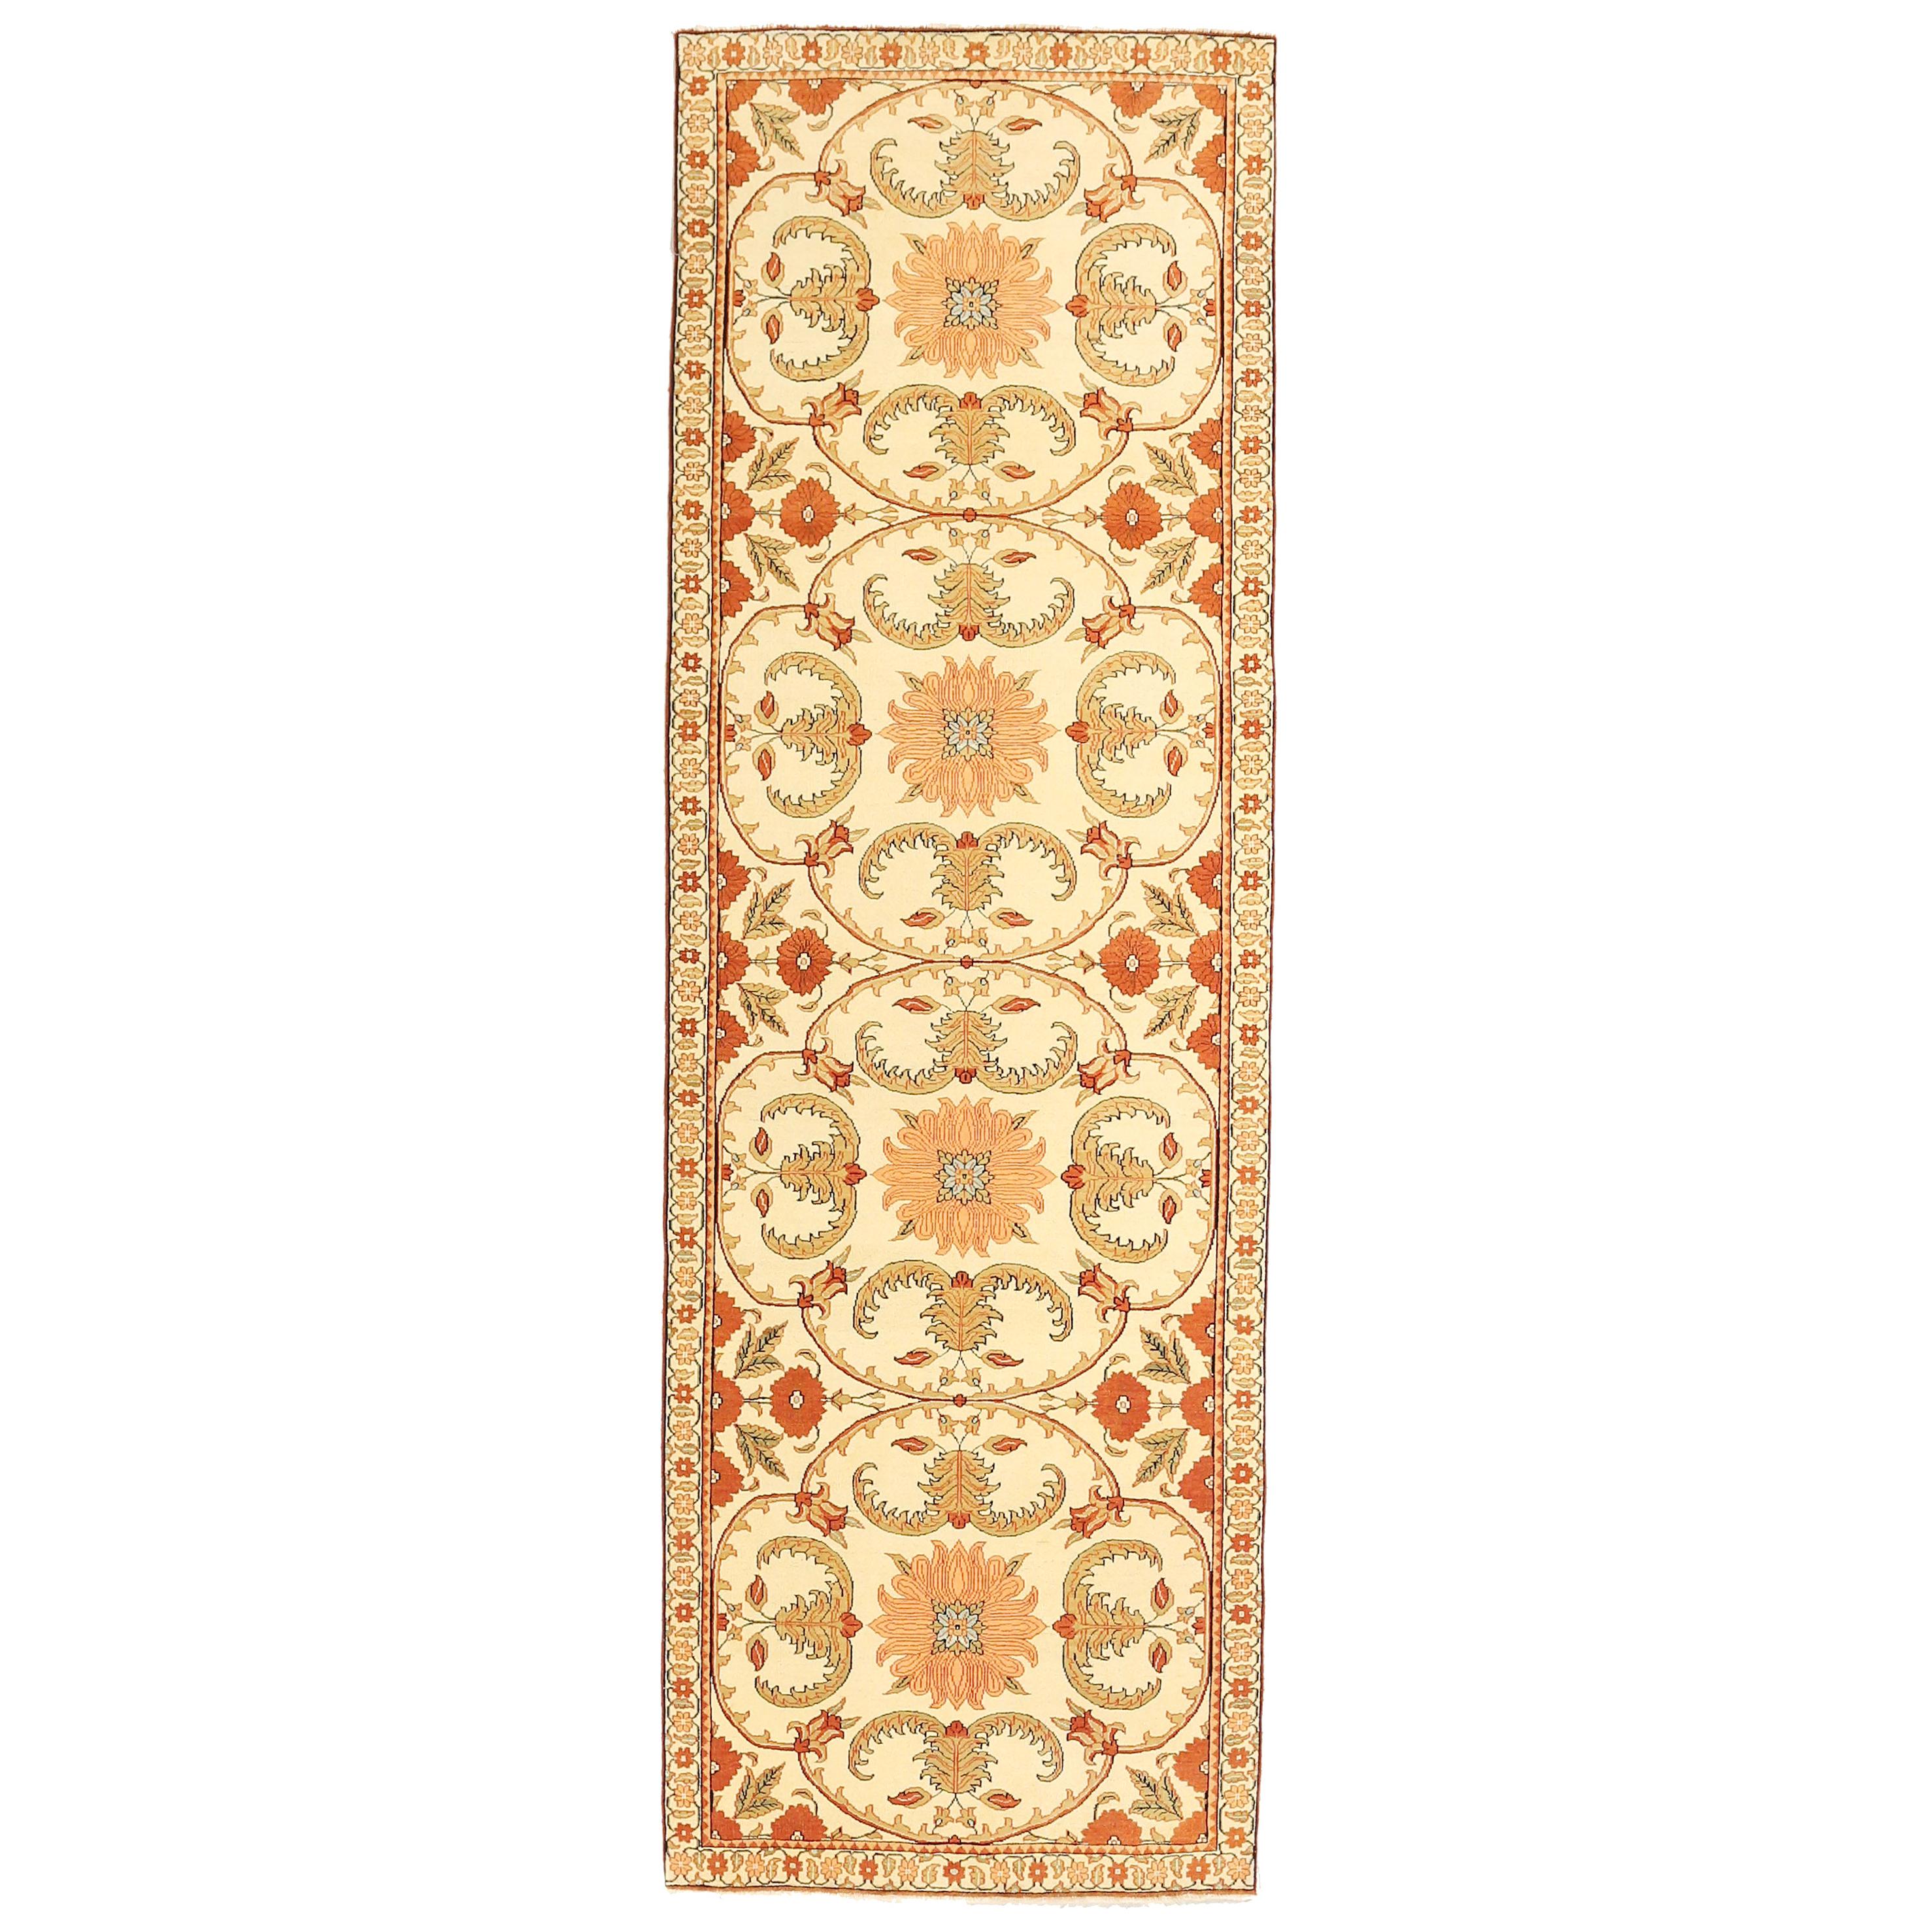 Antique Turkish Agra Runner Rug with Beige & Orange Botanical Details For Sale